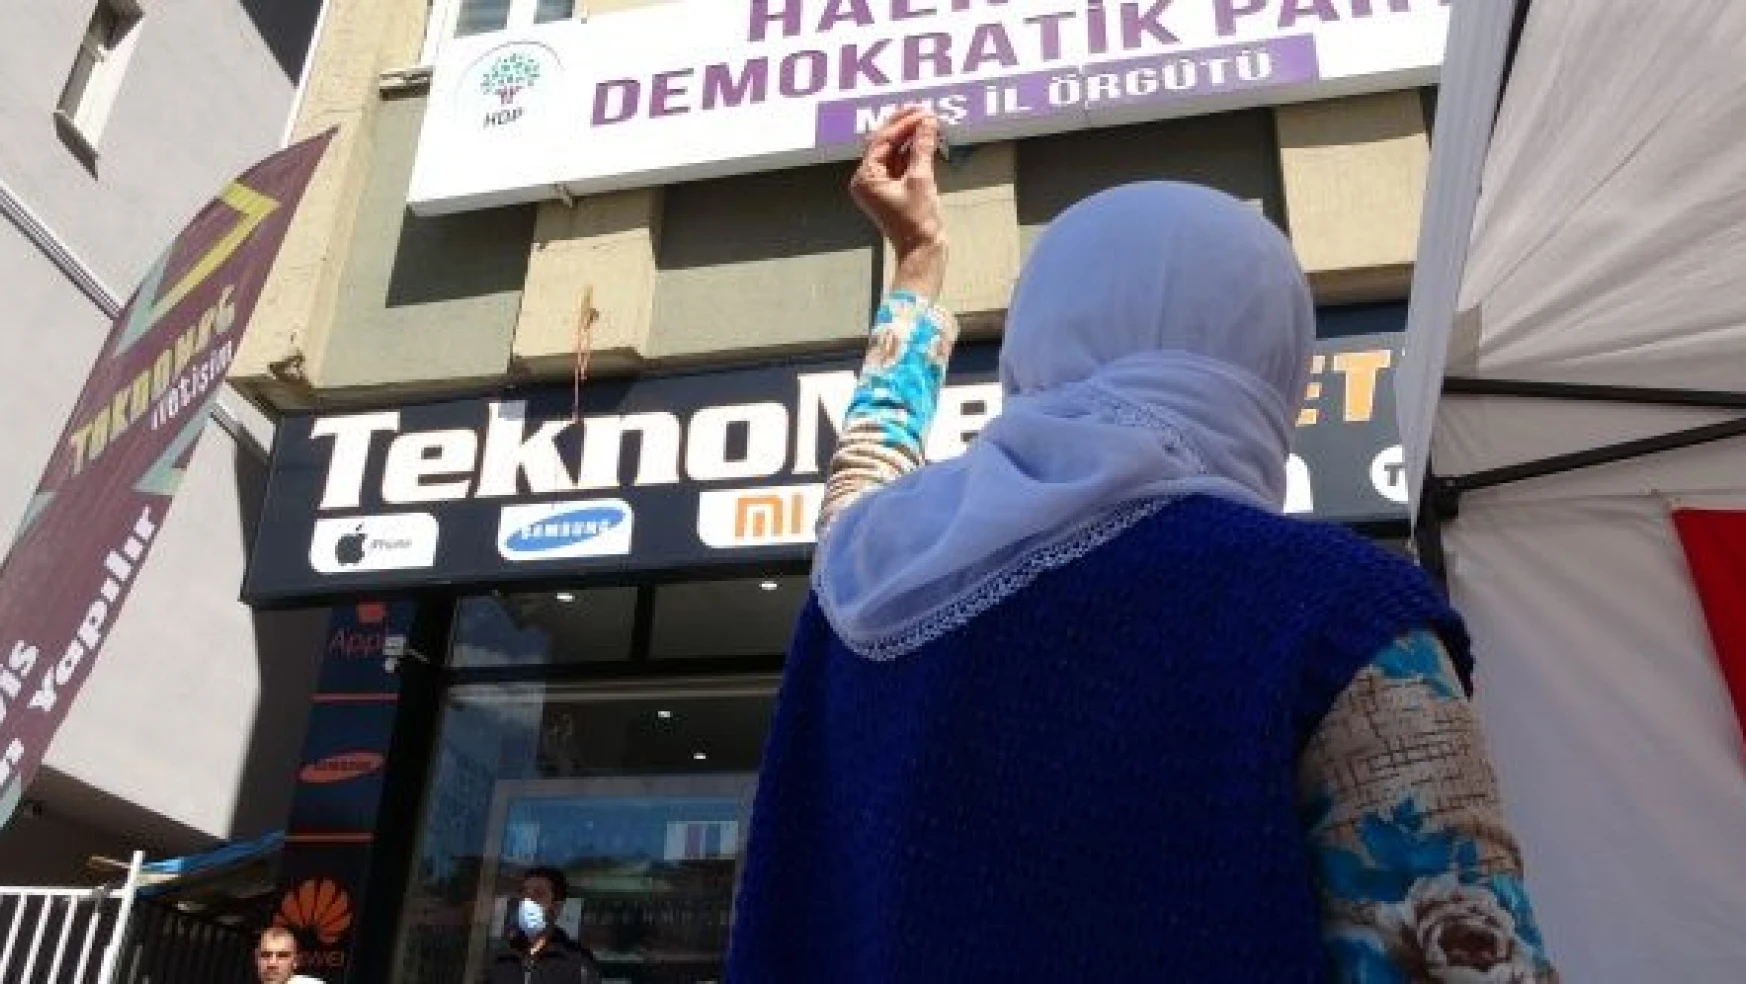 Annelerin HDP önündeki evlat nöbeti sürüyor